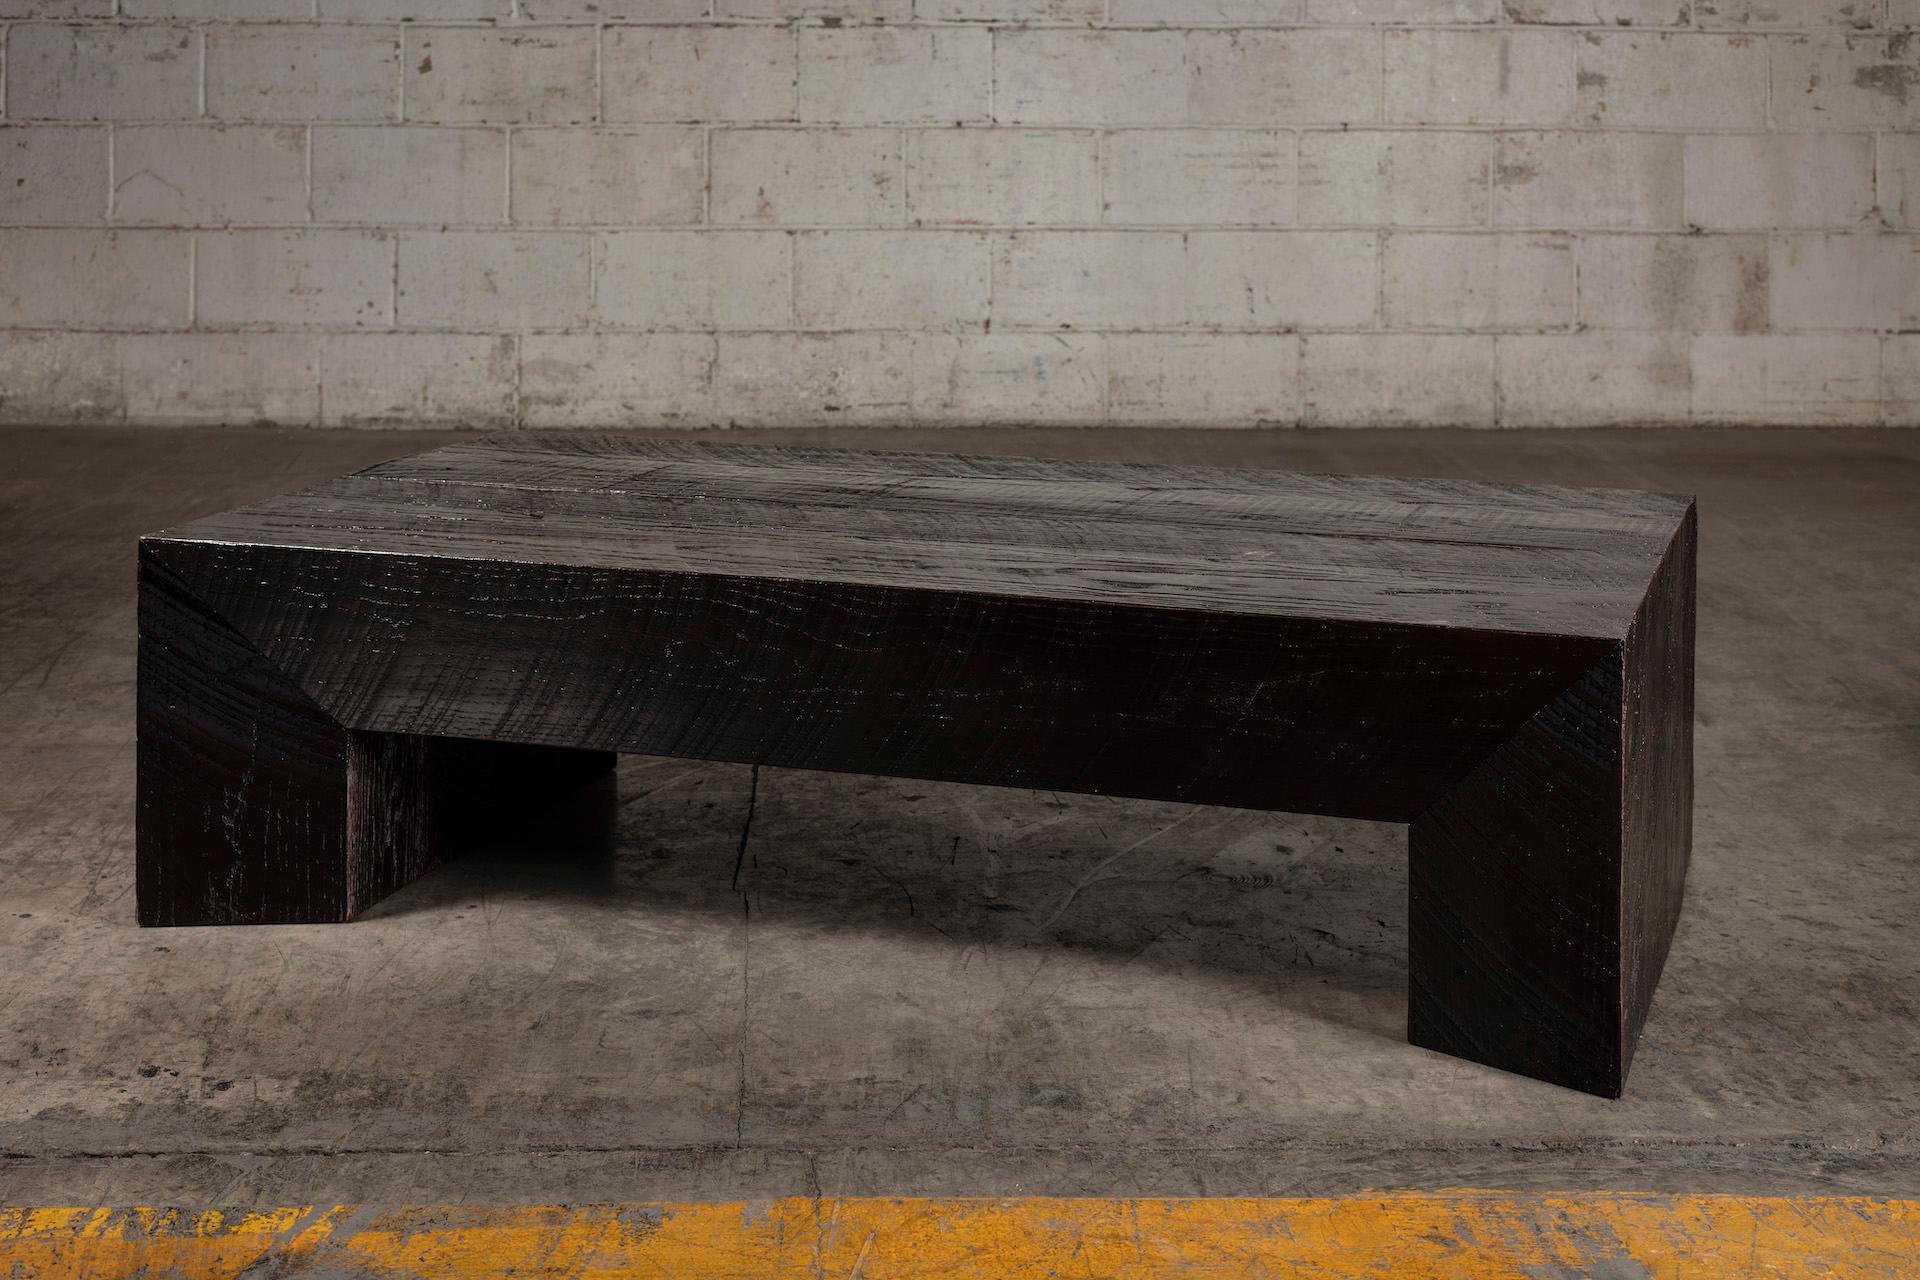 Cette table basse imparfaite en chêne est sculptée à la main dans du chêne massif et s'inspire des textures dramatiques du brutalisme des années 1970.